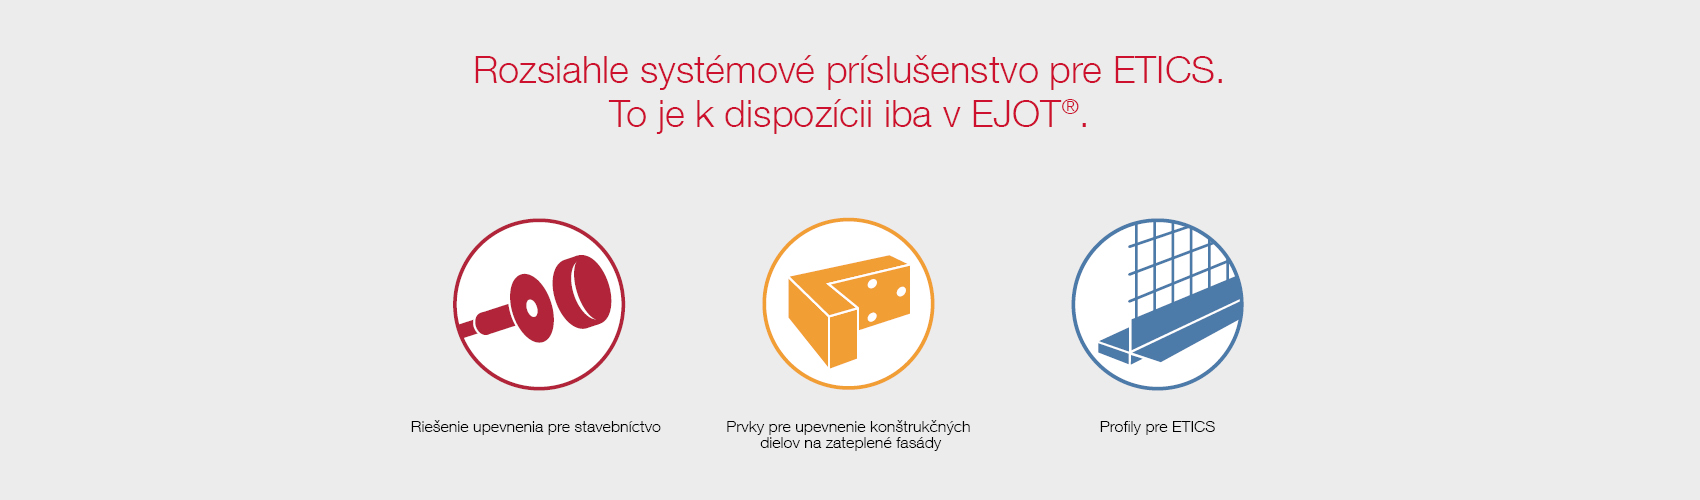 Rozsiahle systémové príslušenstvo pre ETICS. To je k dispozícii iba v EJOT®.